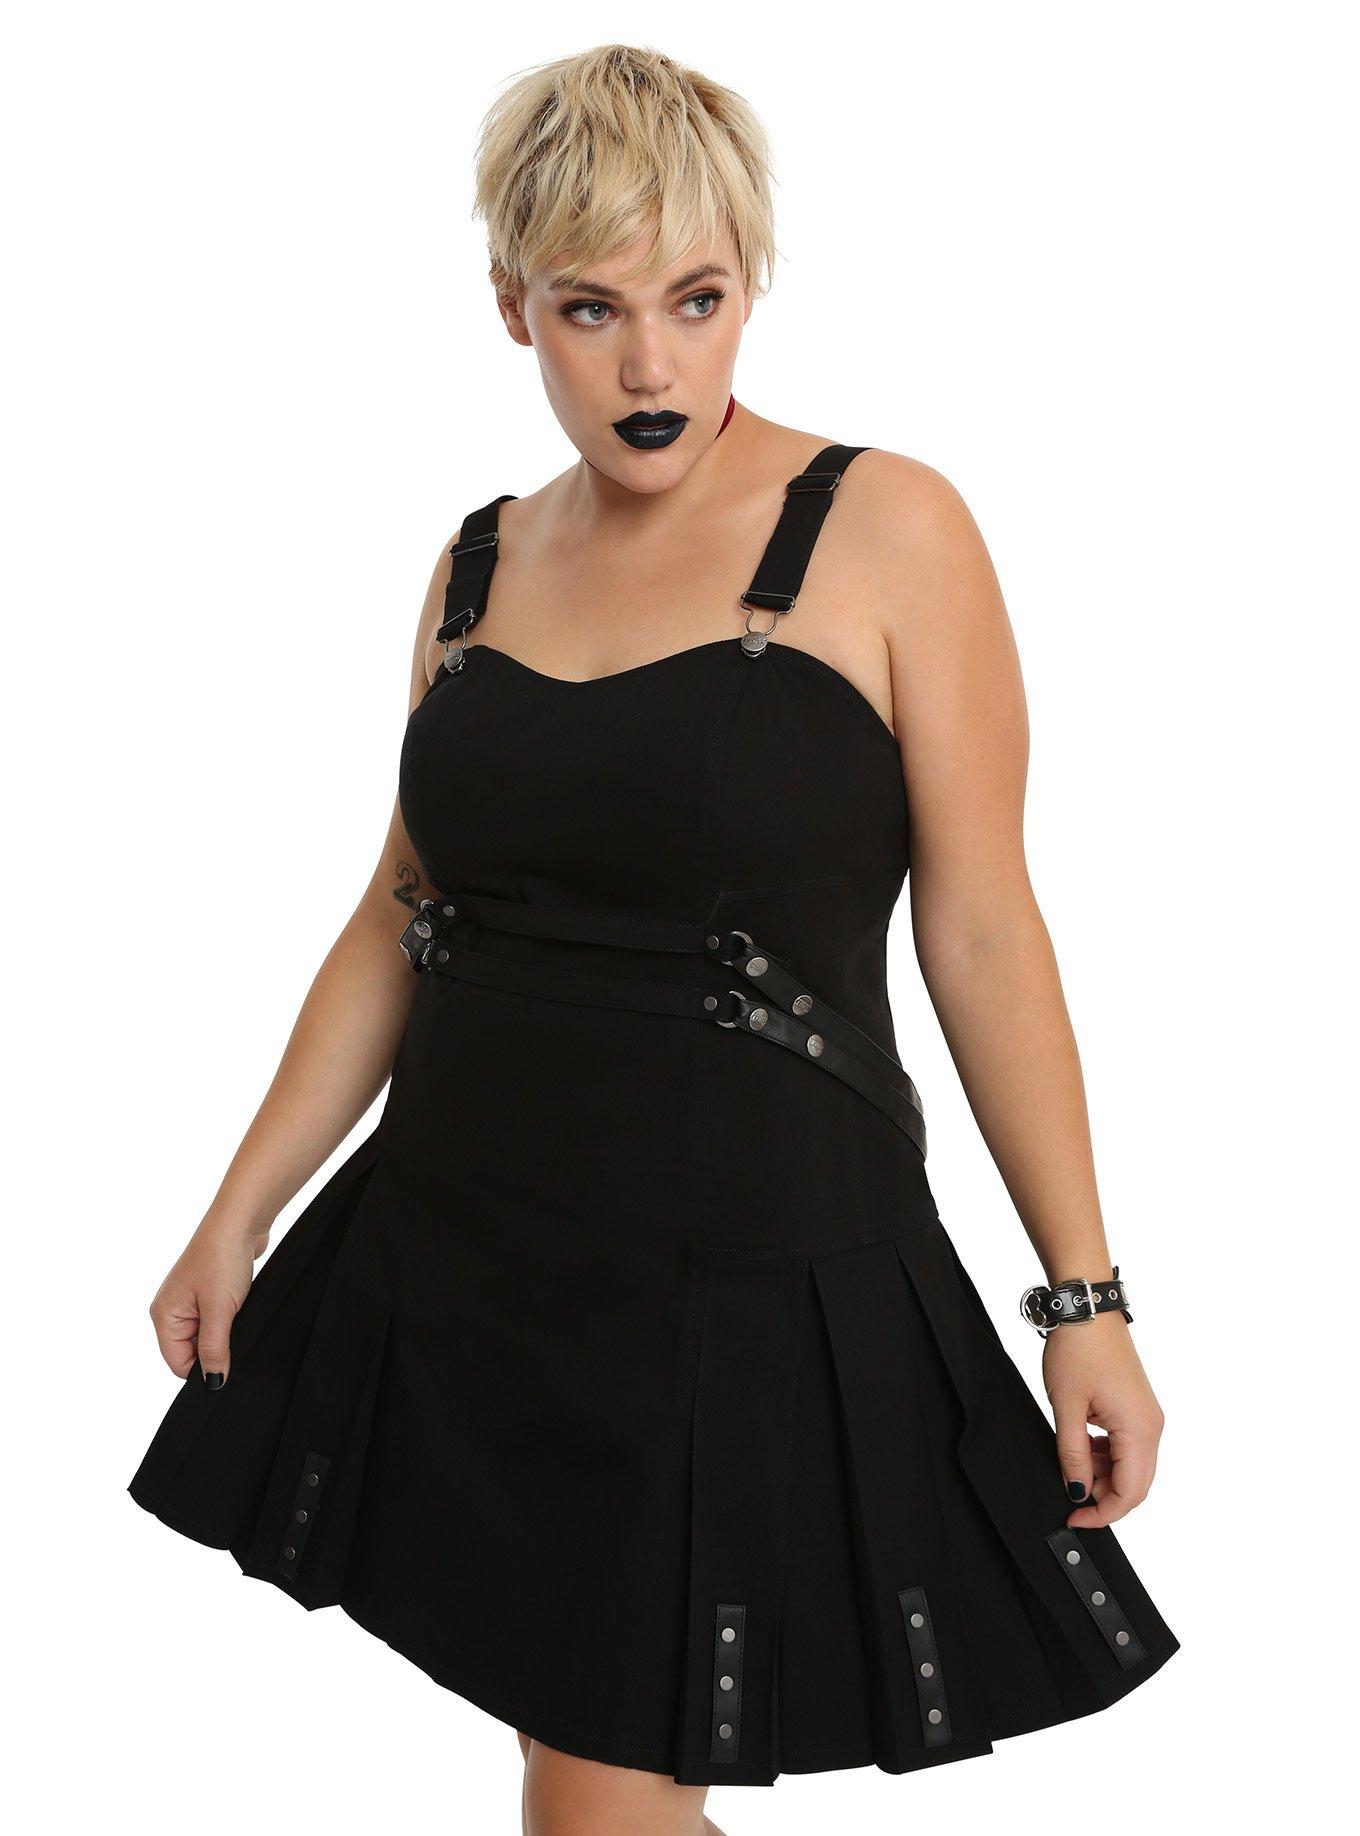 Tripp Black Strap Bondage Dress Plus Size, BLACK, hi-res